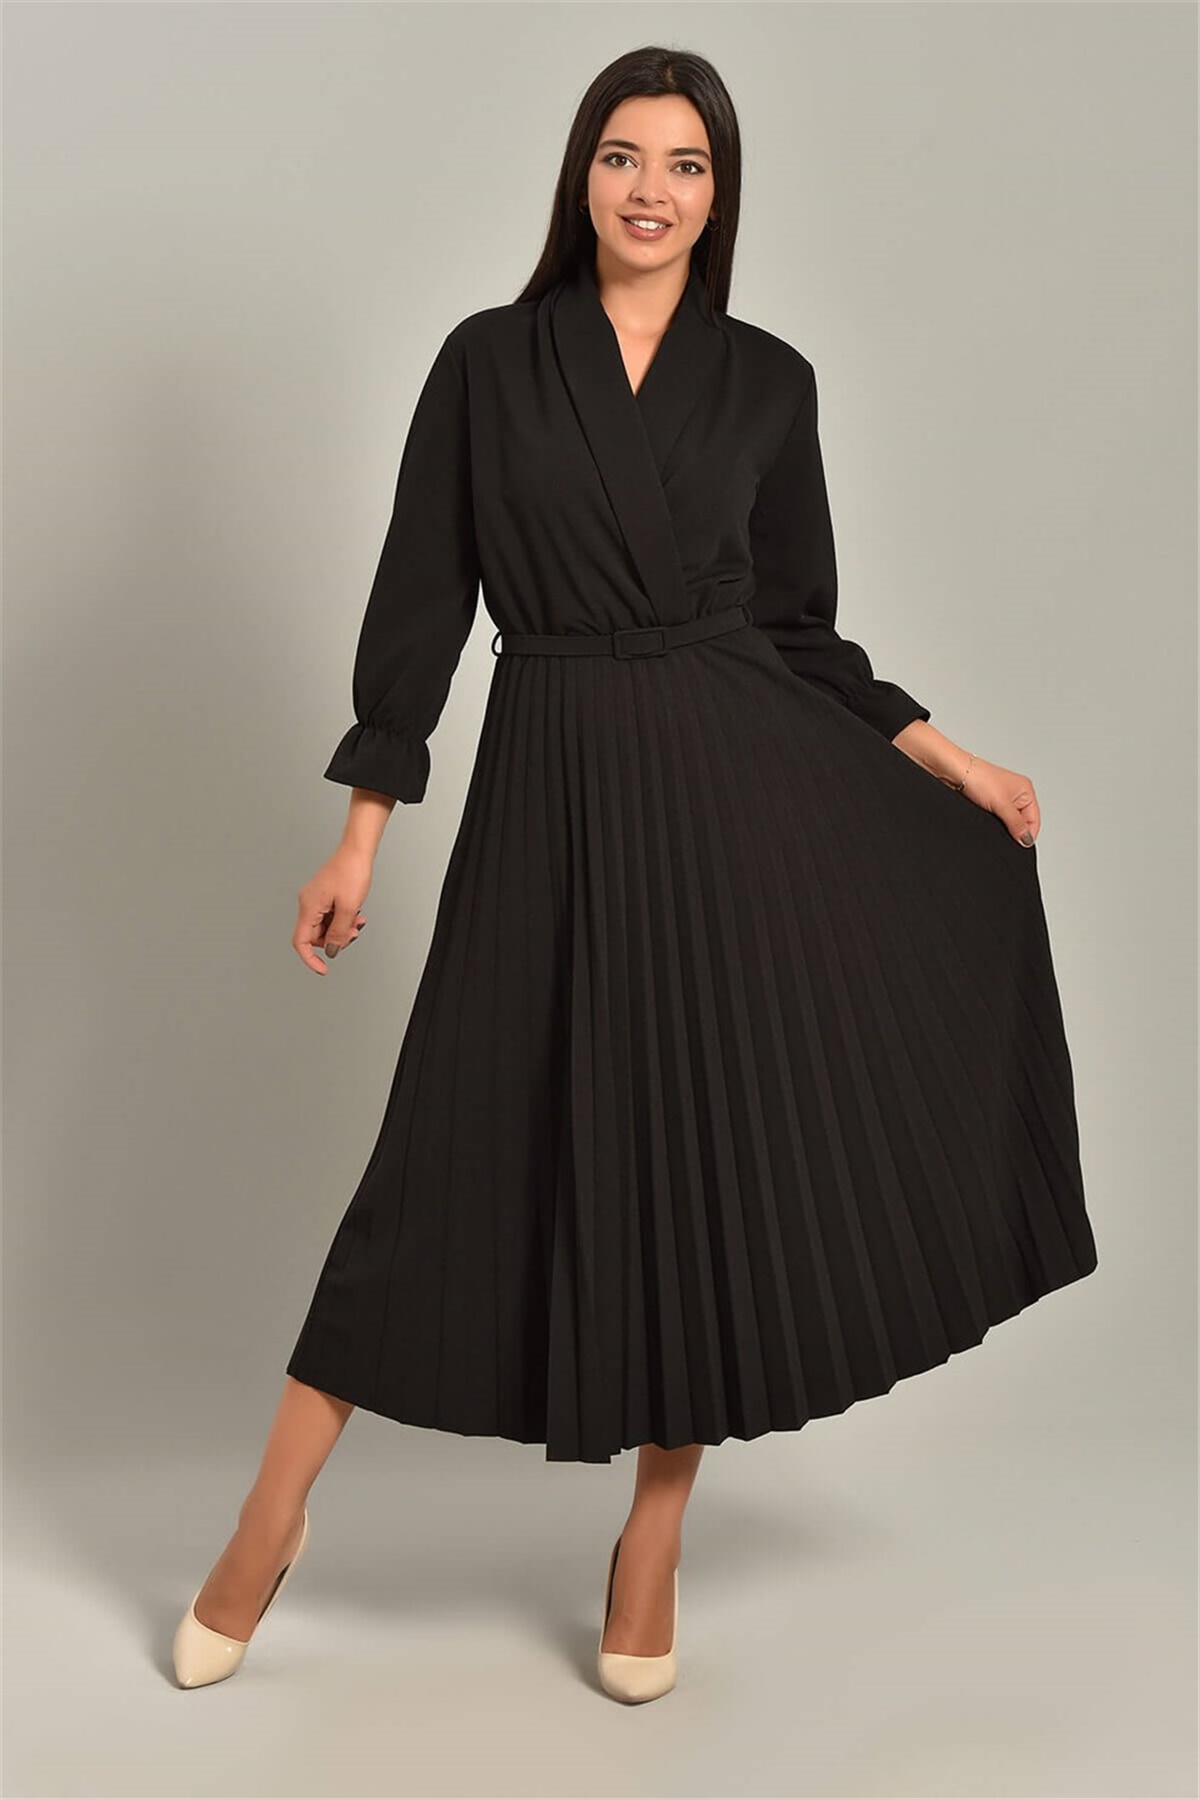 Siyah Kemerli Pileli Elbise - Moda Kapımda İle Kapınızda!